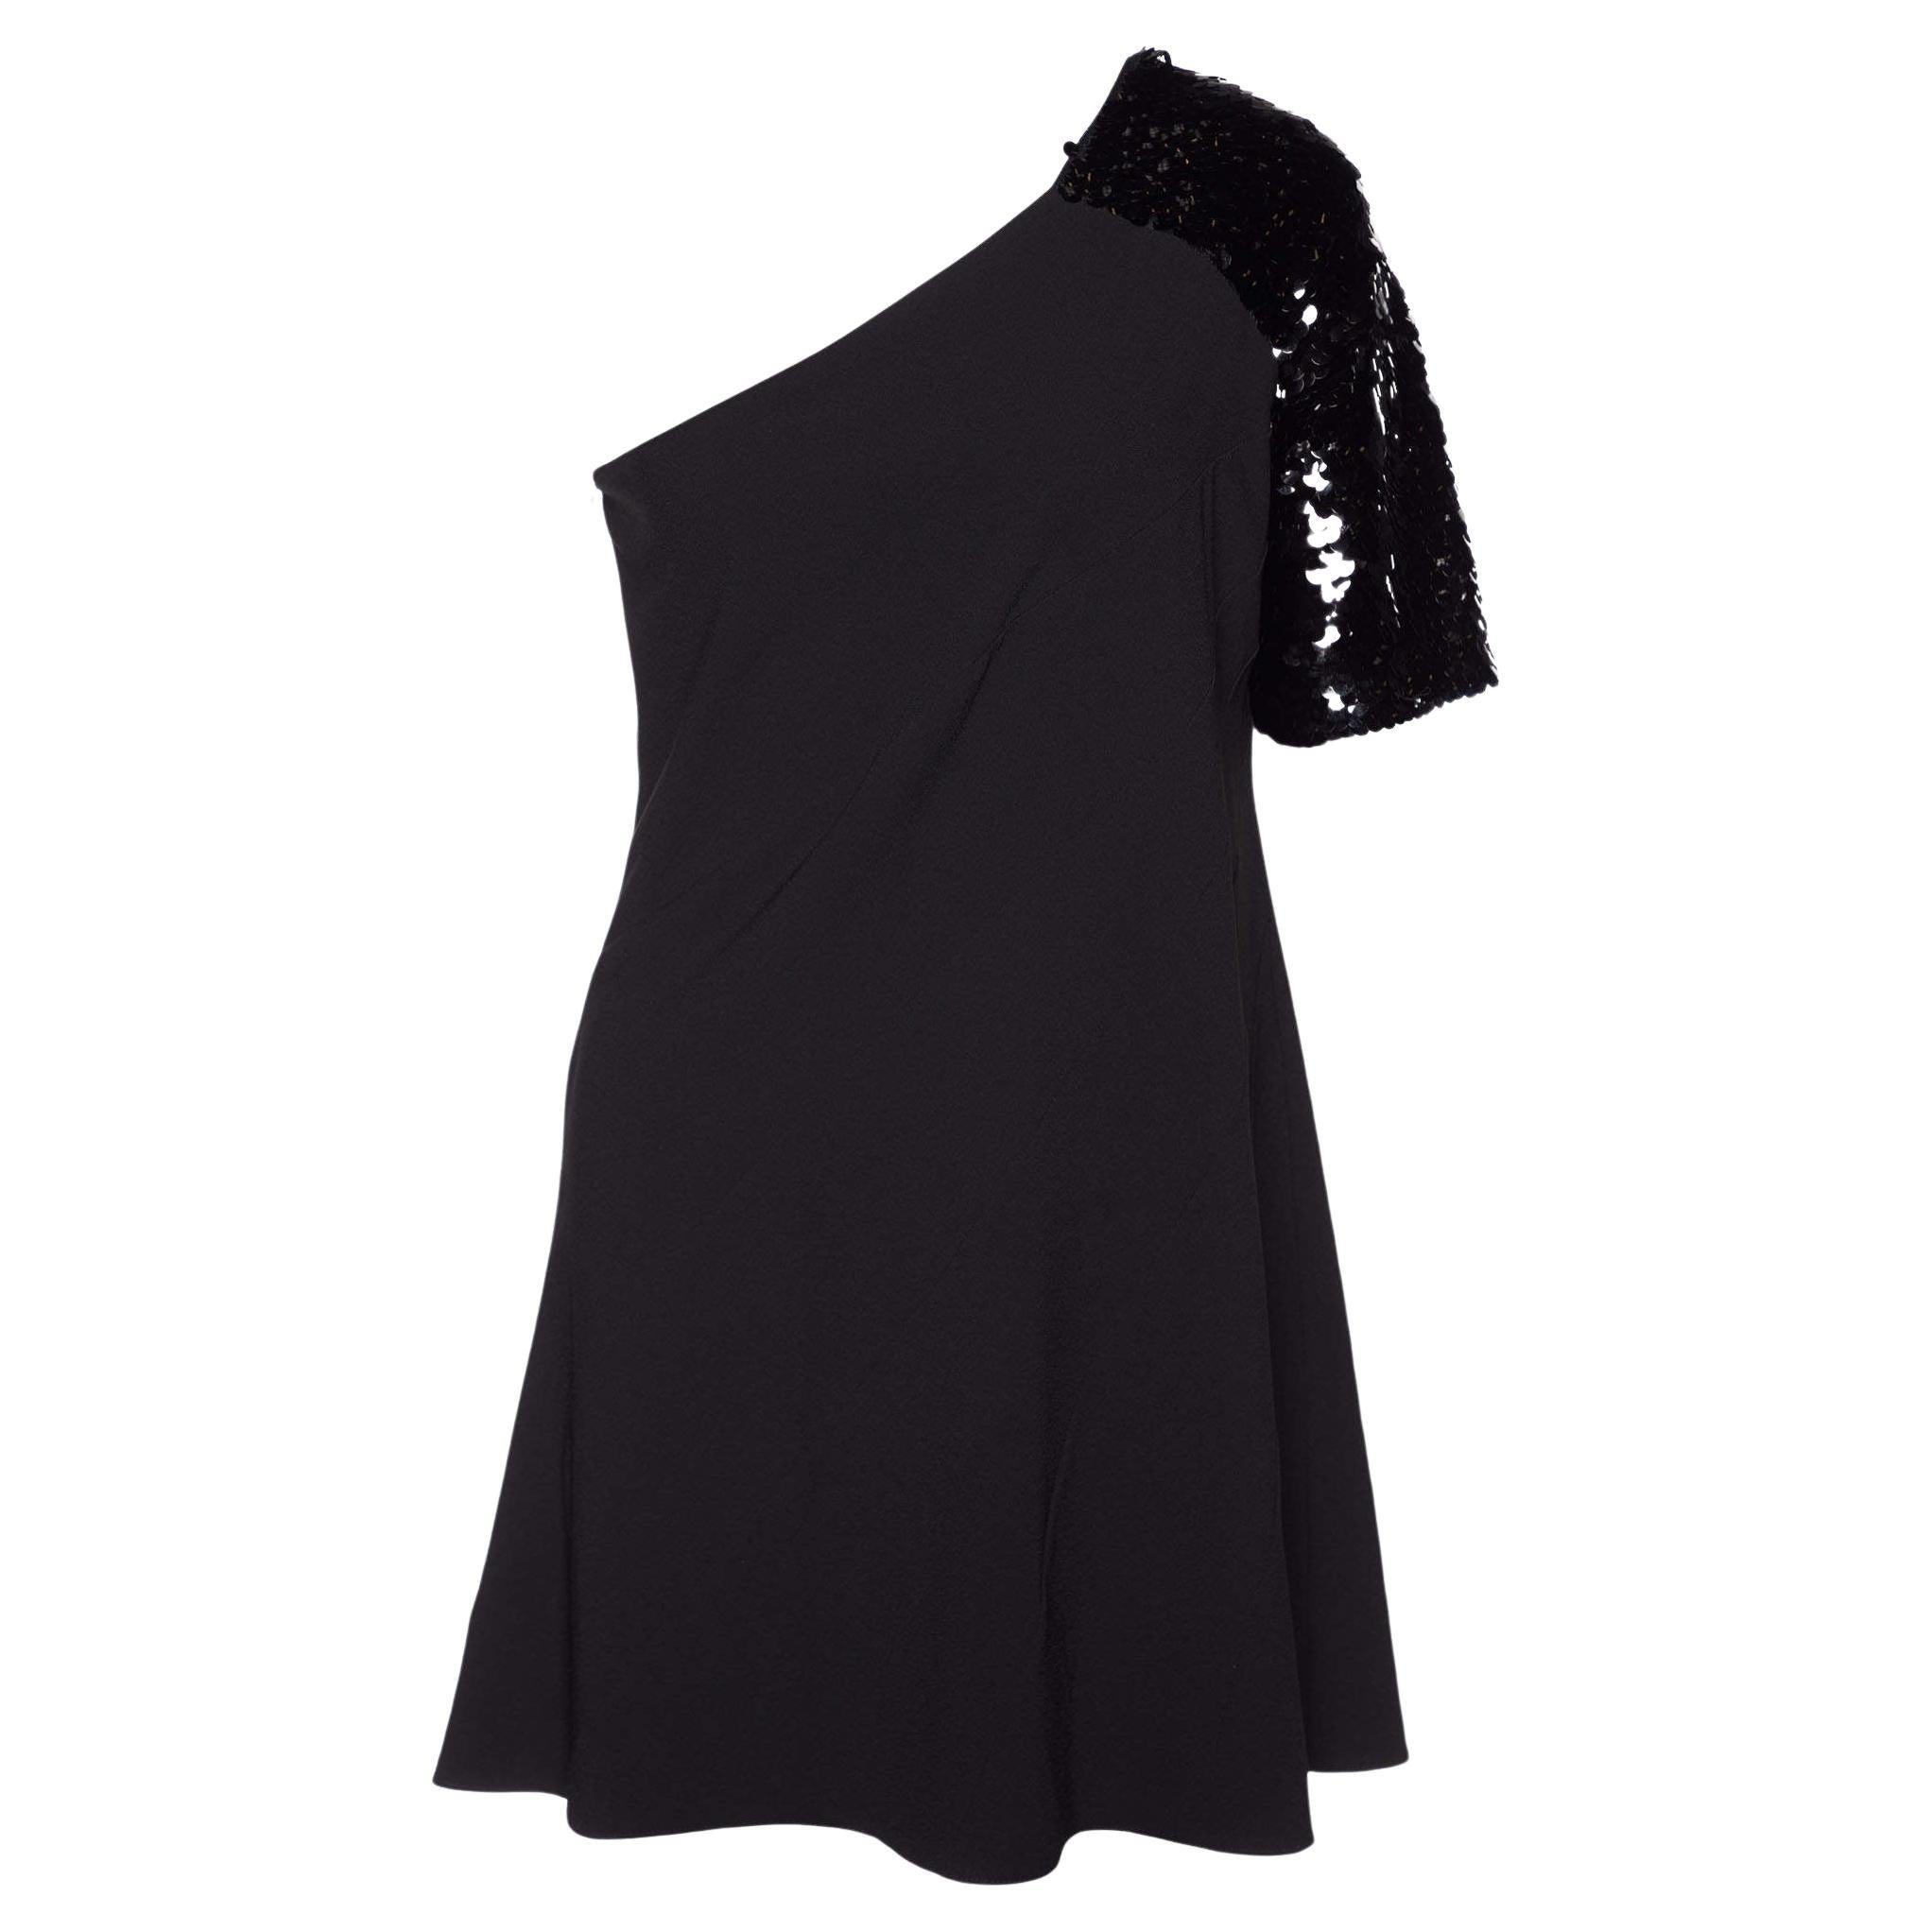 Just Cavalli Black Sequin Embellished Paneled One Shoulder Dress L